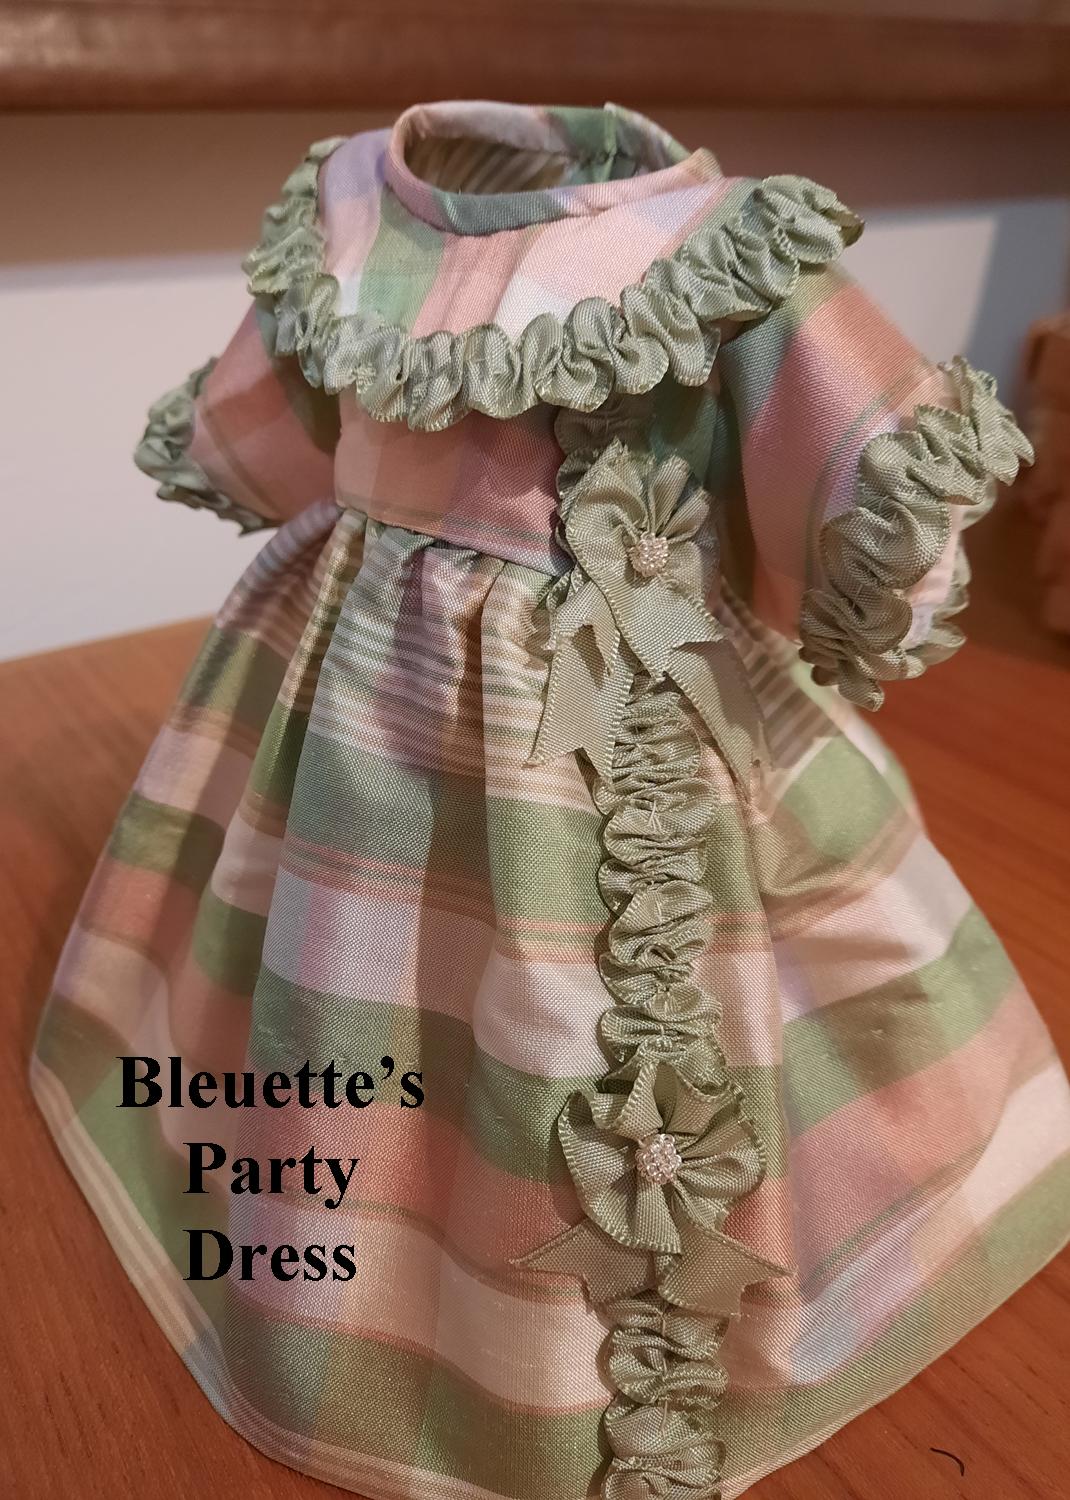 Bleuette's Party Dress